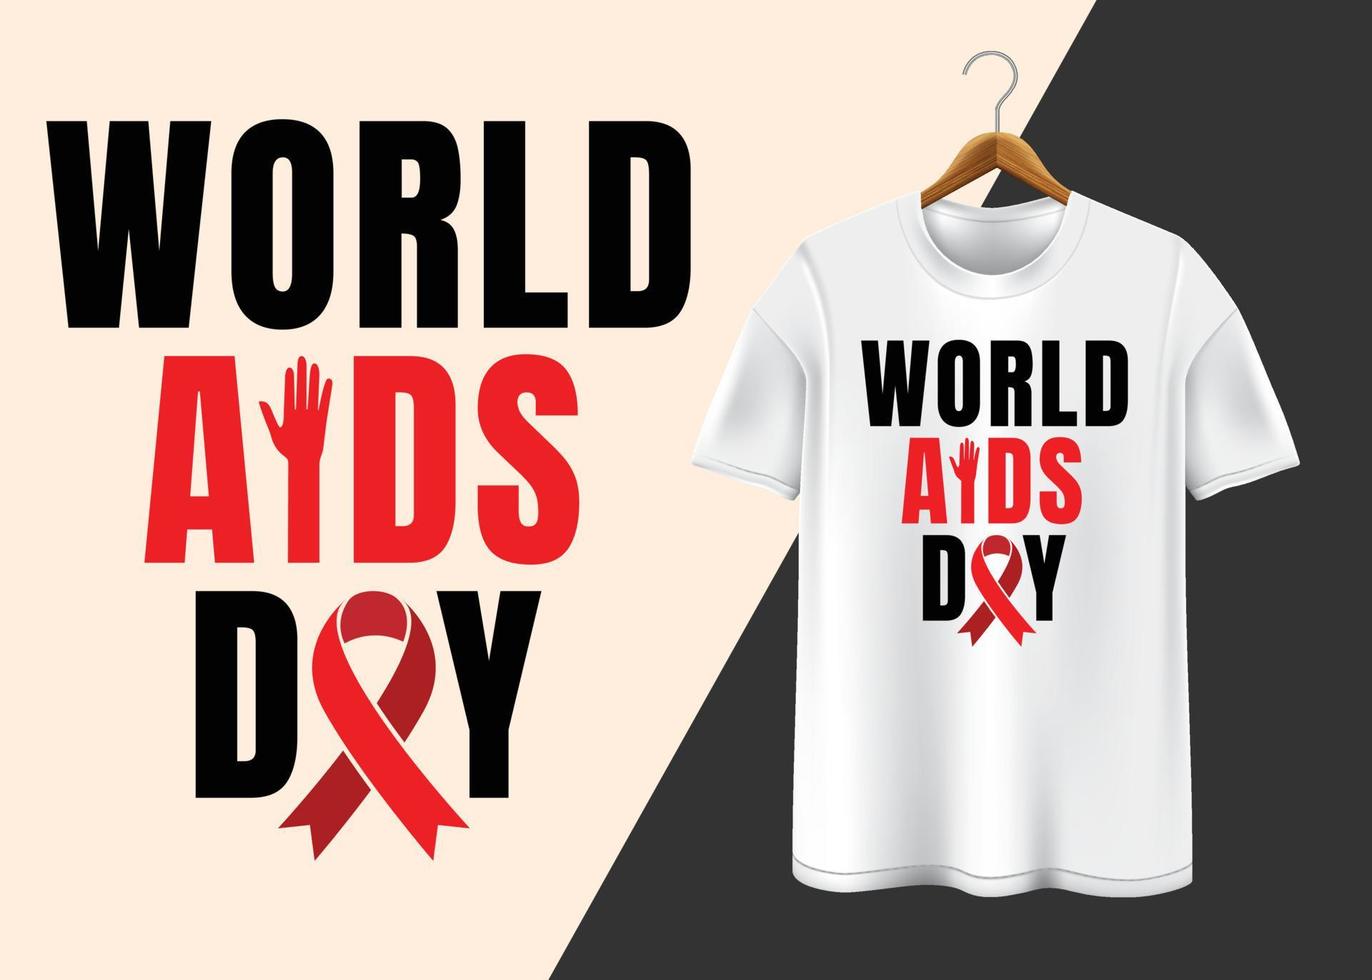 mondo AIDS giorno 1 ° dicembre maglietta design vettore